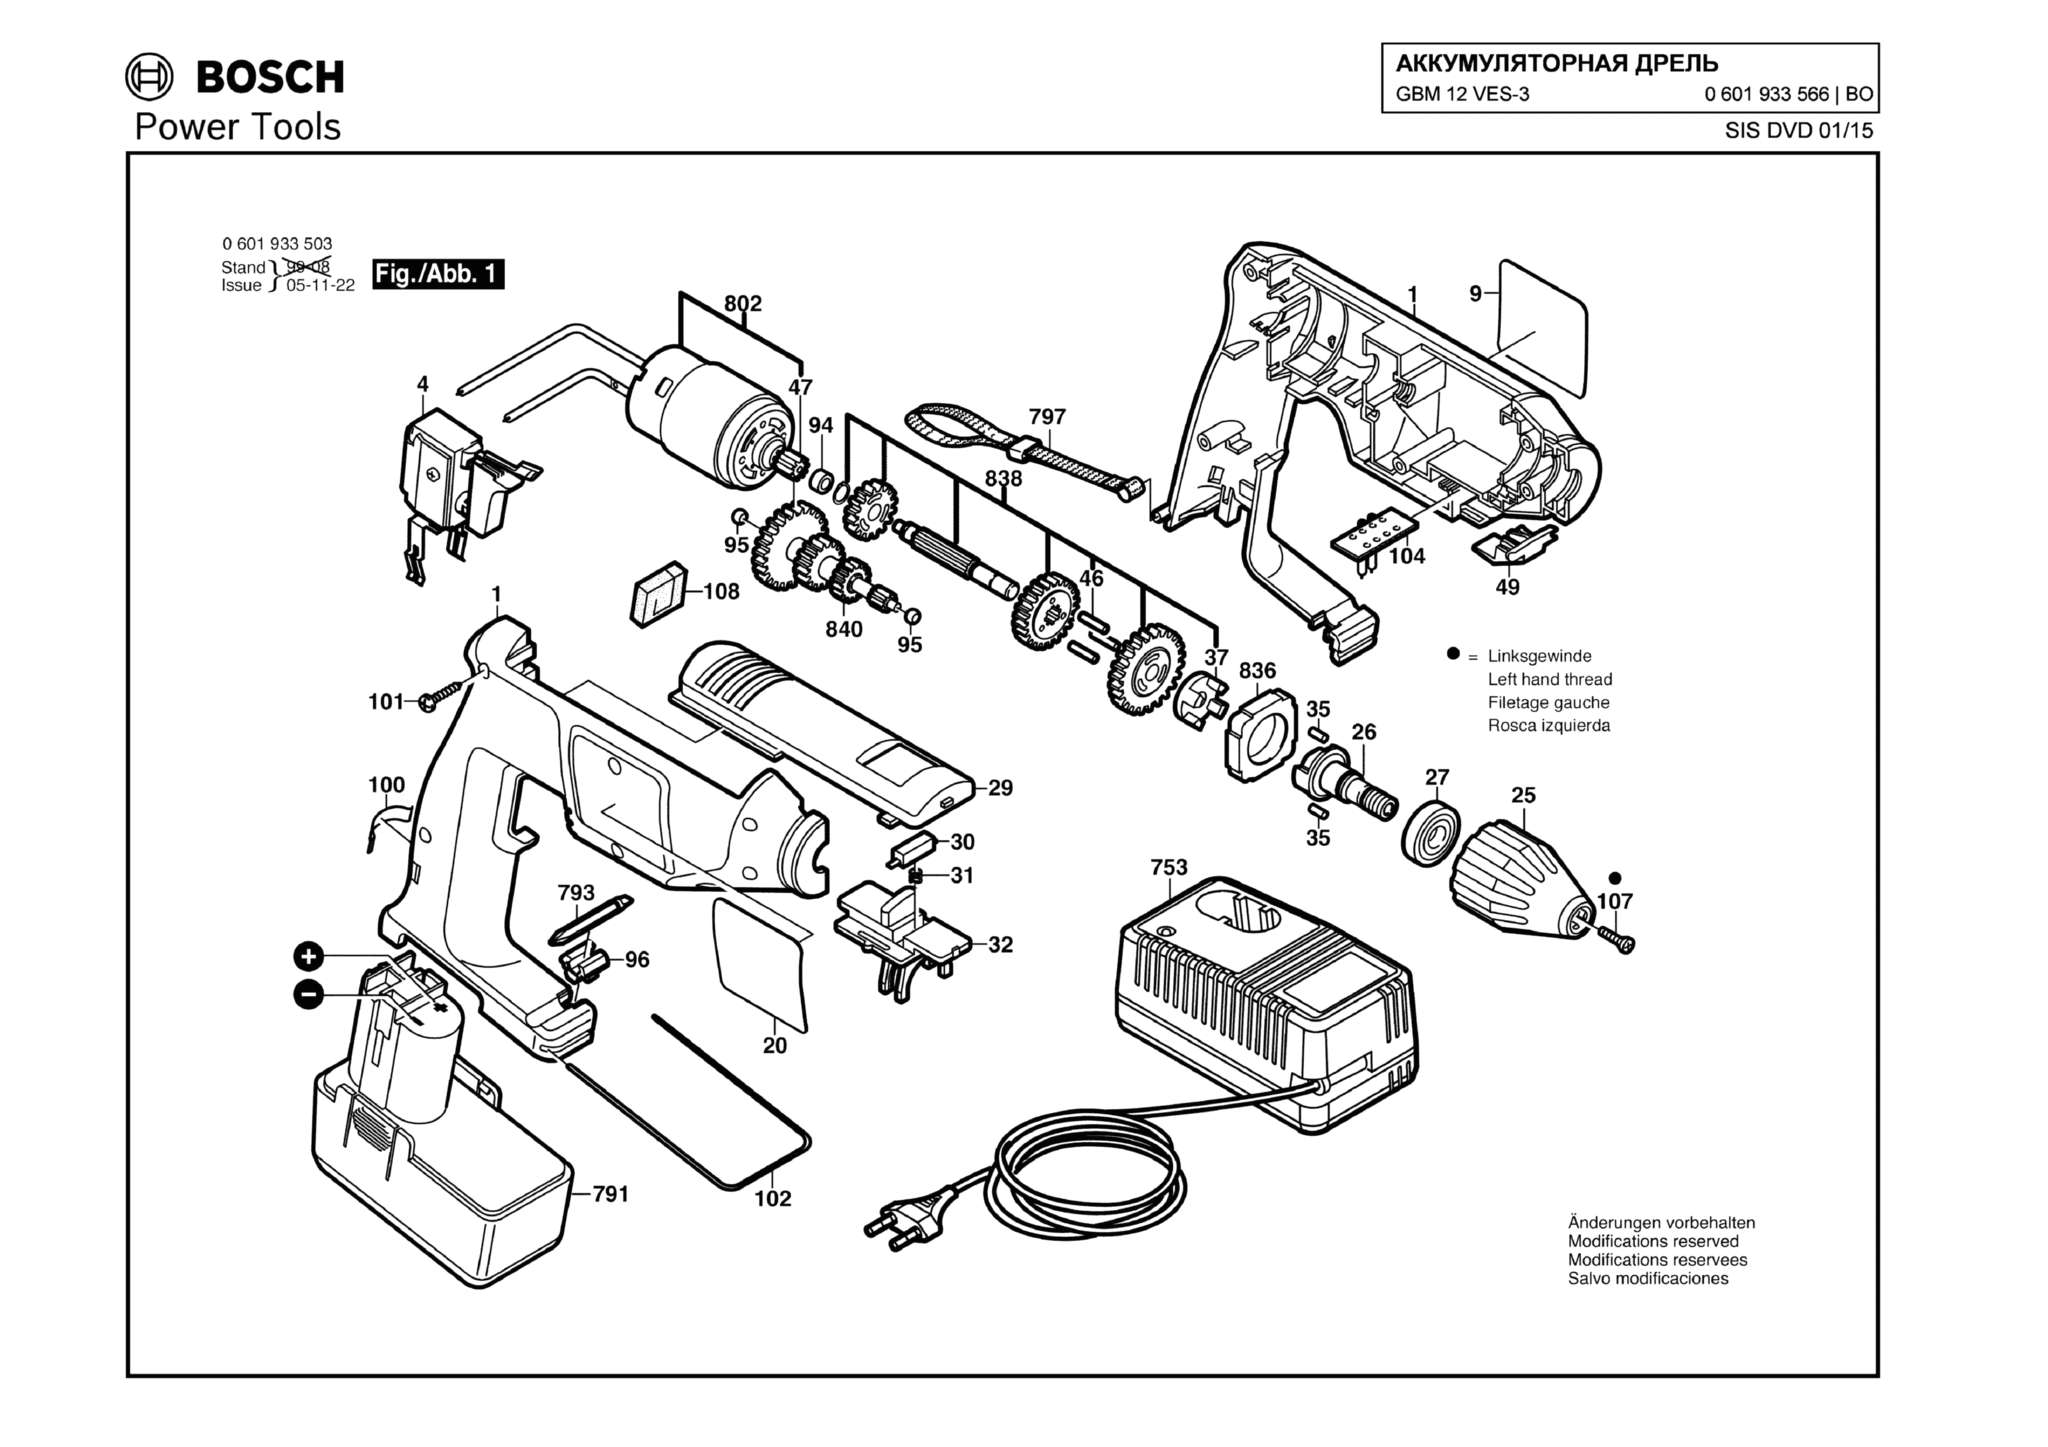 Запчасти, схема и деталировка Bosch GBM 12 VES-3 (ТИП 0601933566)